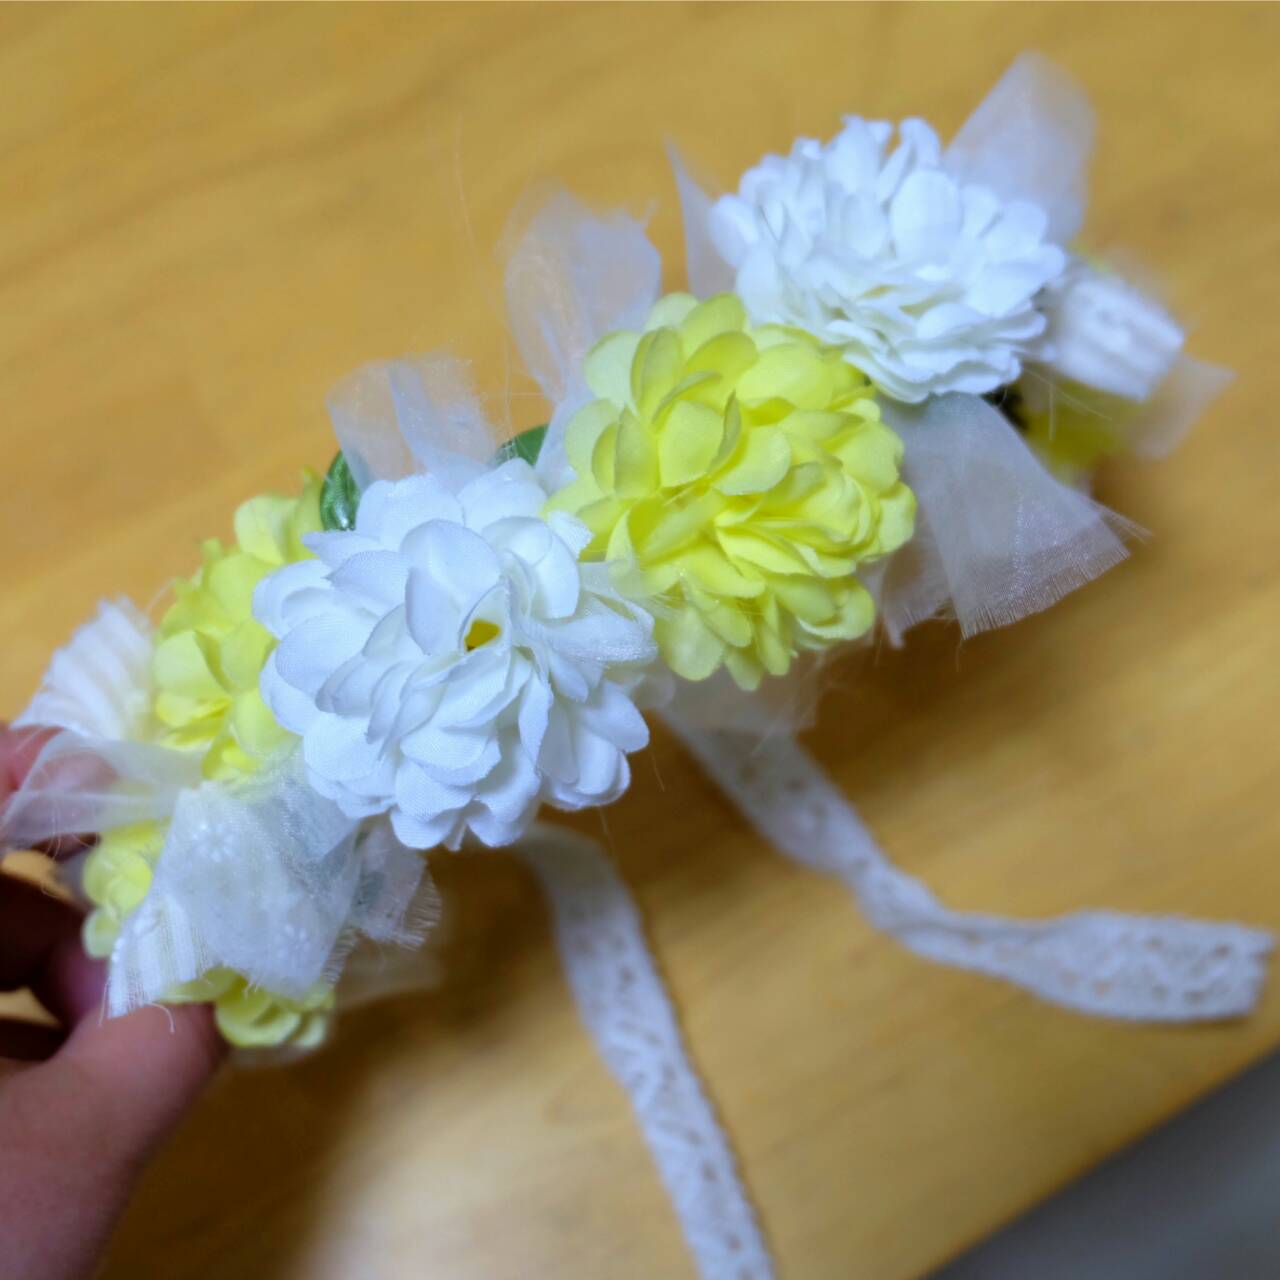 100均ハンドメイド 春の装い 花かんむり コサージュ バニーリース リビング埼玉web